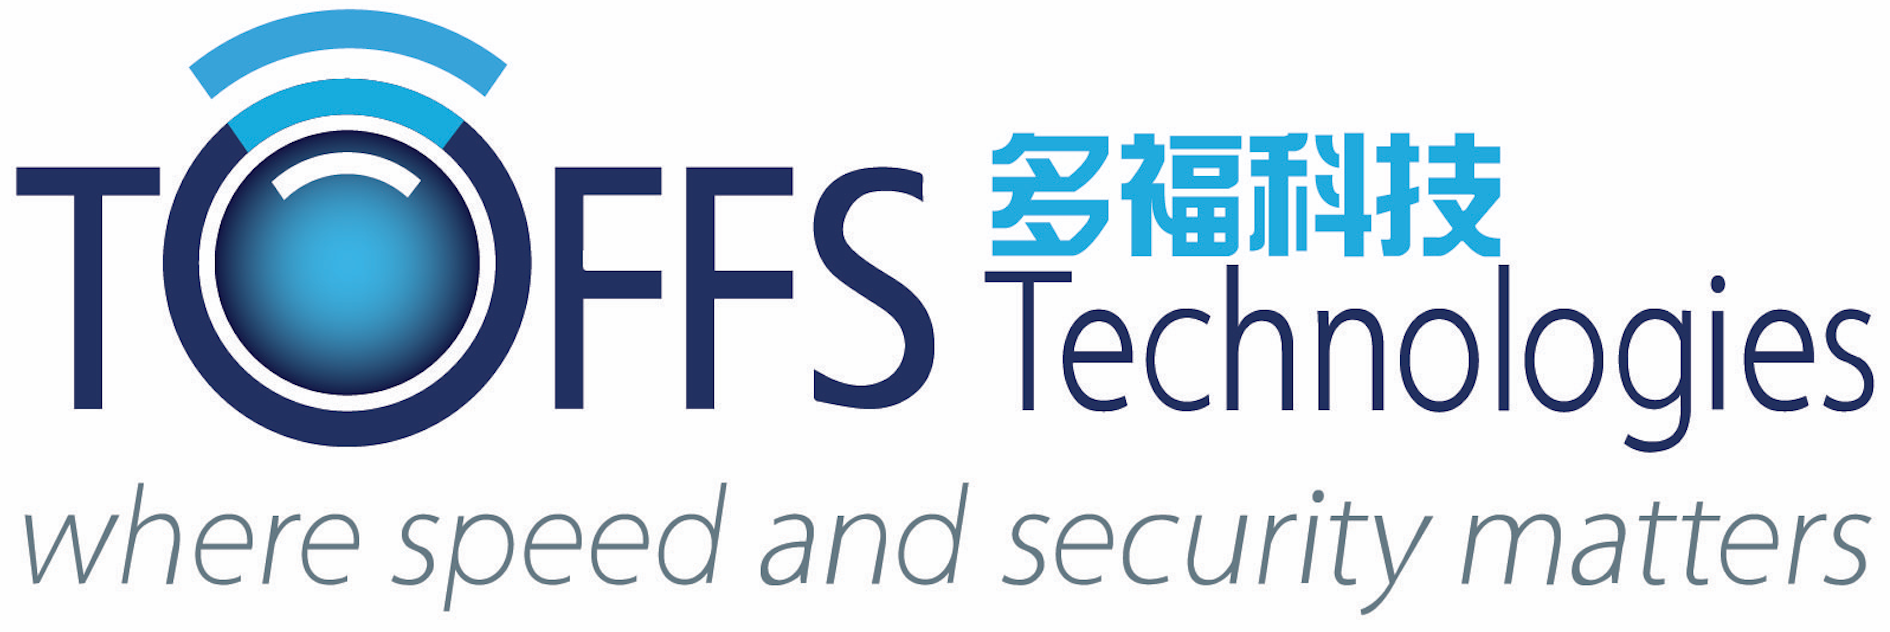 TOFFS logo.png